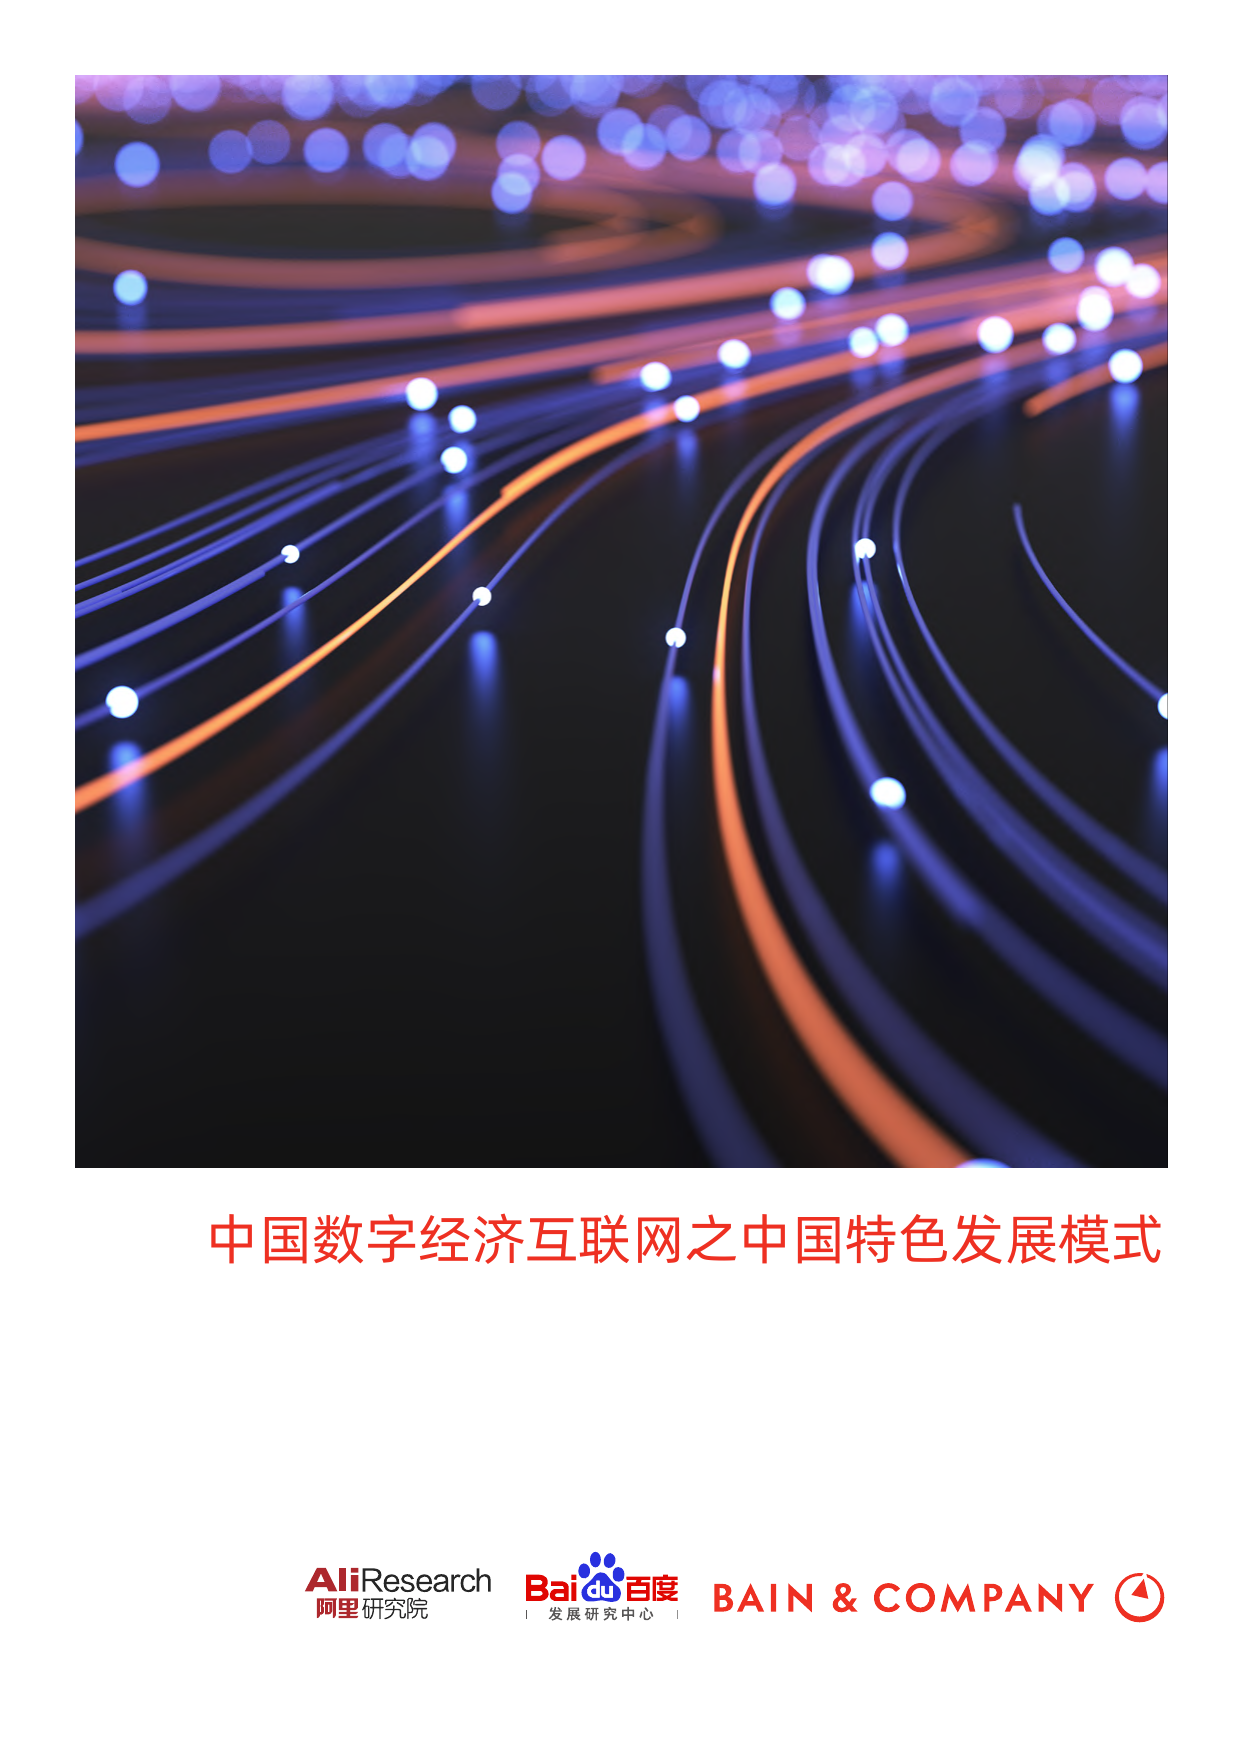 数字经济互联网之中国数字化发展模式（中英）-阿里&百度-2021-61页